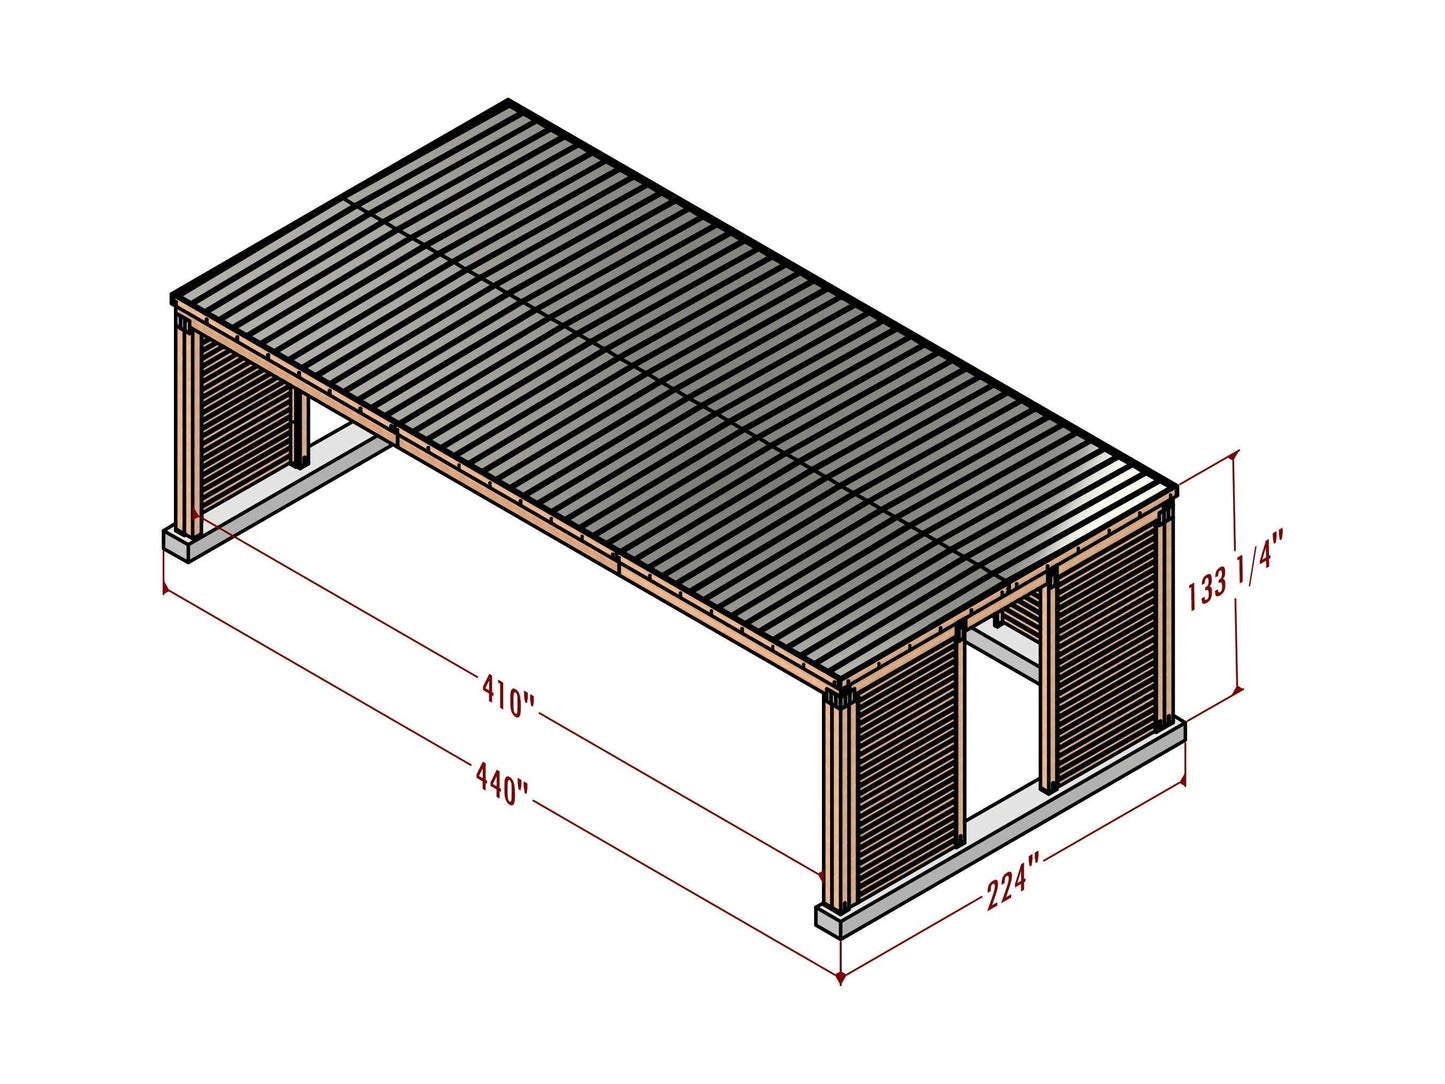 18x36 carport plans, 18x36 car garage, 18x36 shed plan, 18x36 shelter plan, 18x36 kitchen plan